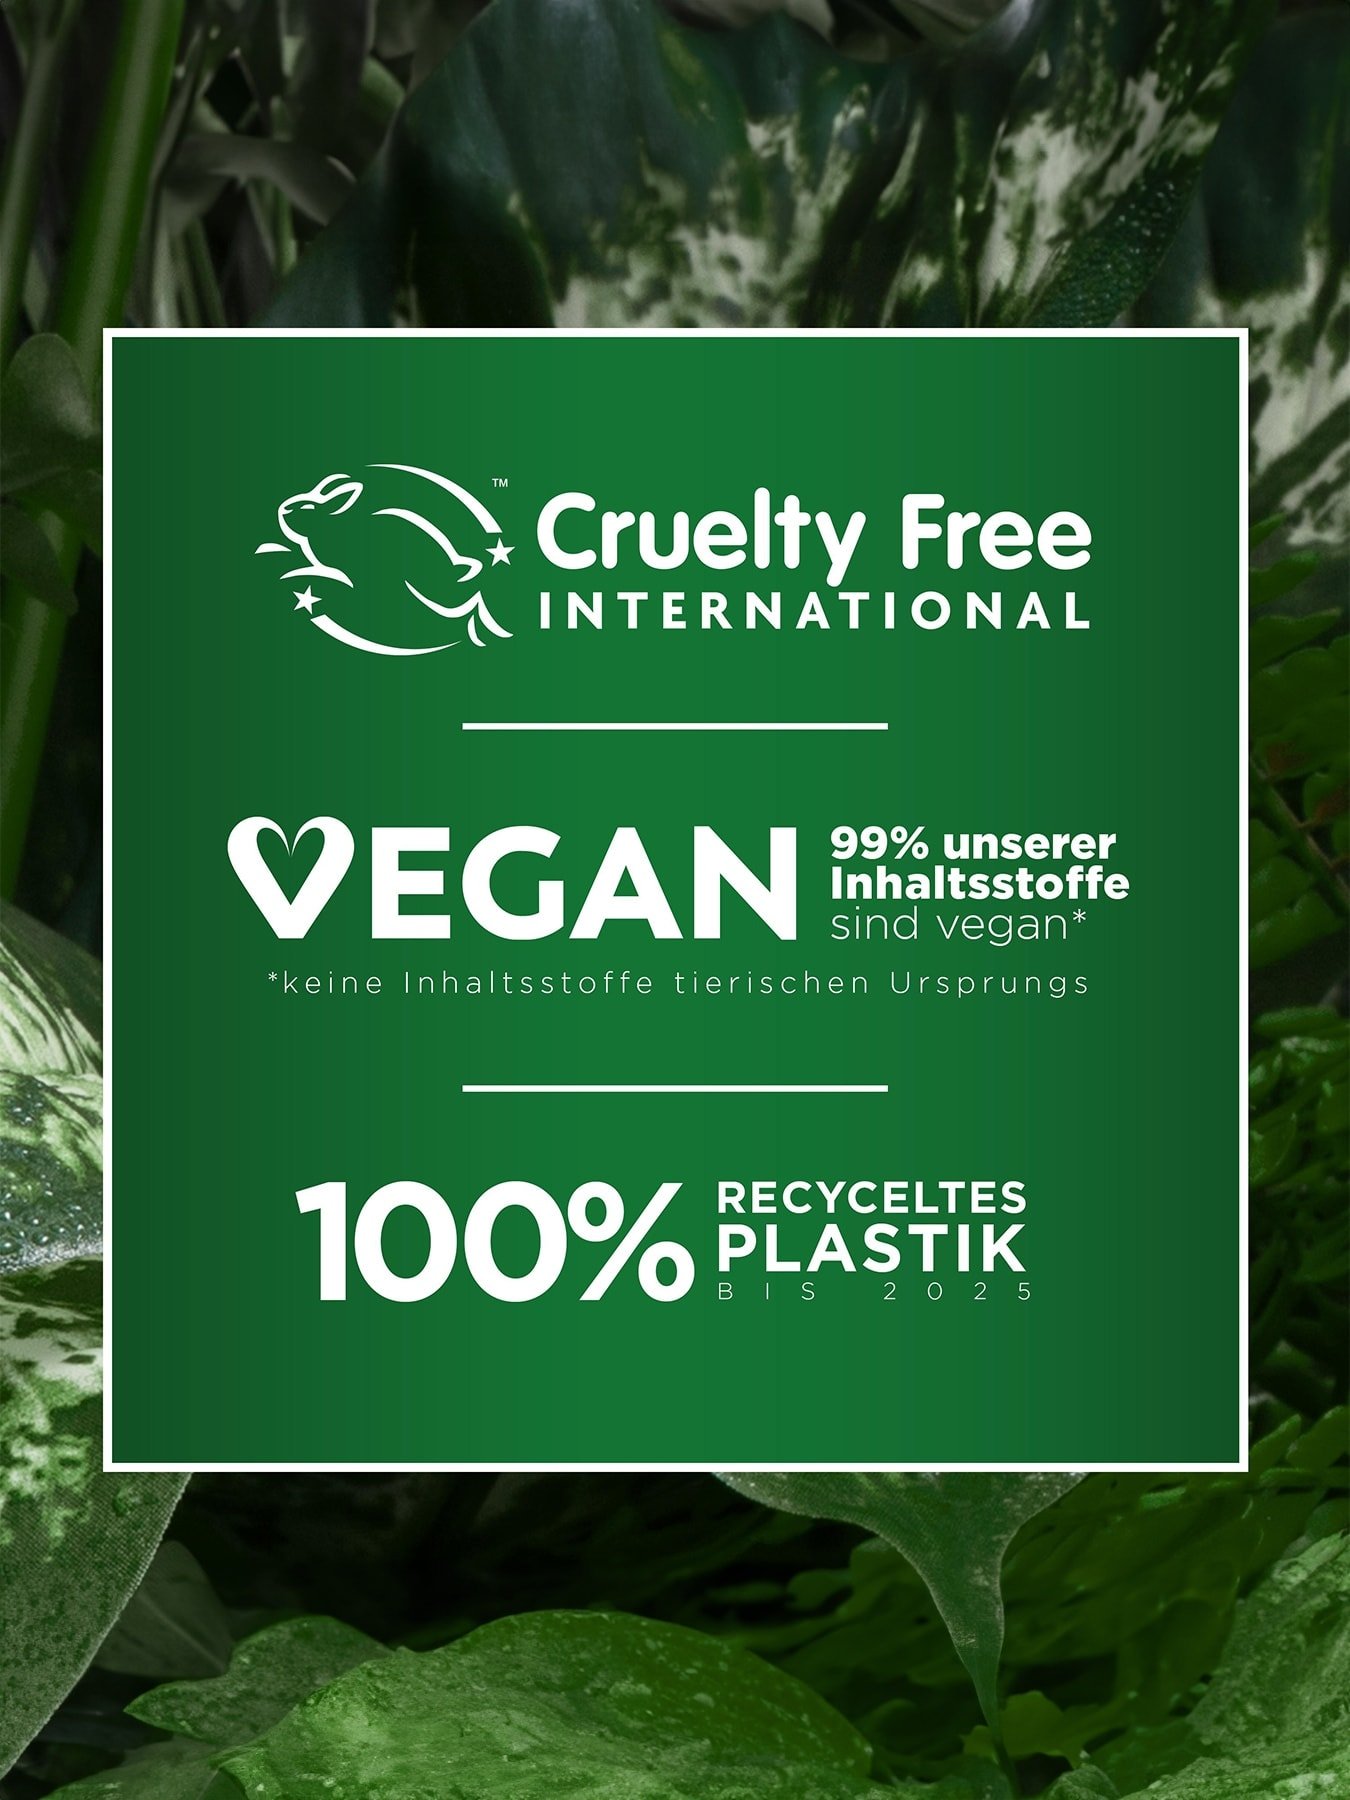 Logo von Cruelty Free International, 99% vegane Inhaltsstoffe & 100% recyceltes Plastik bis 2025